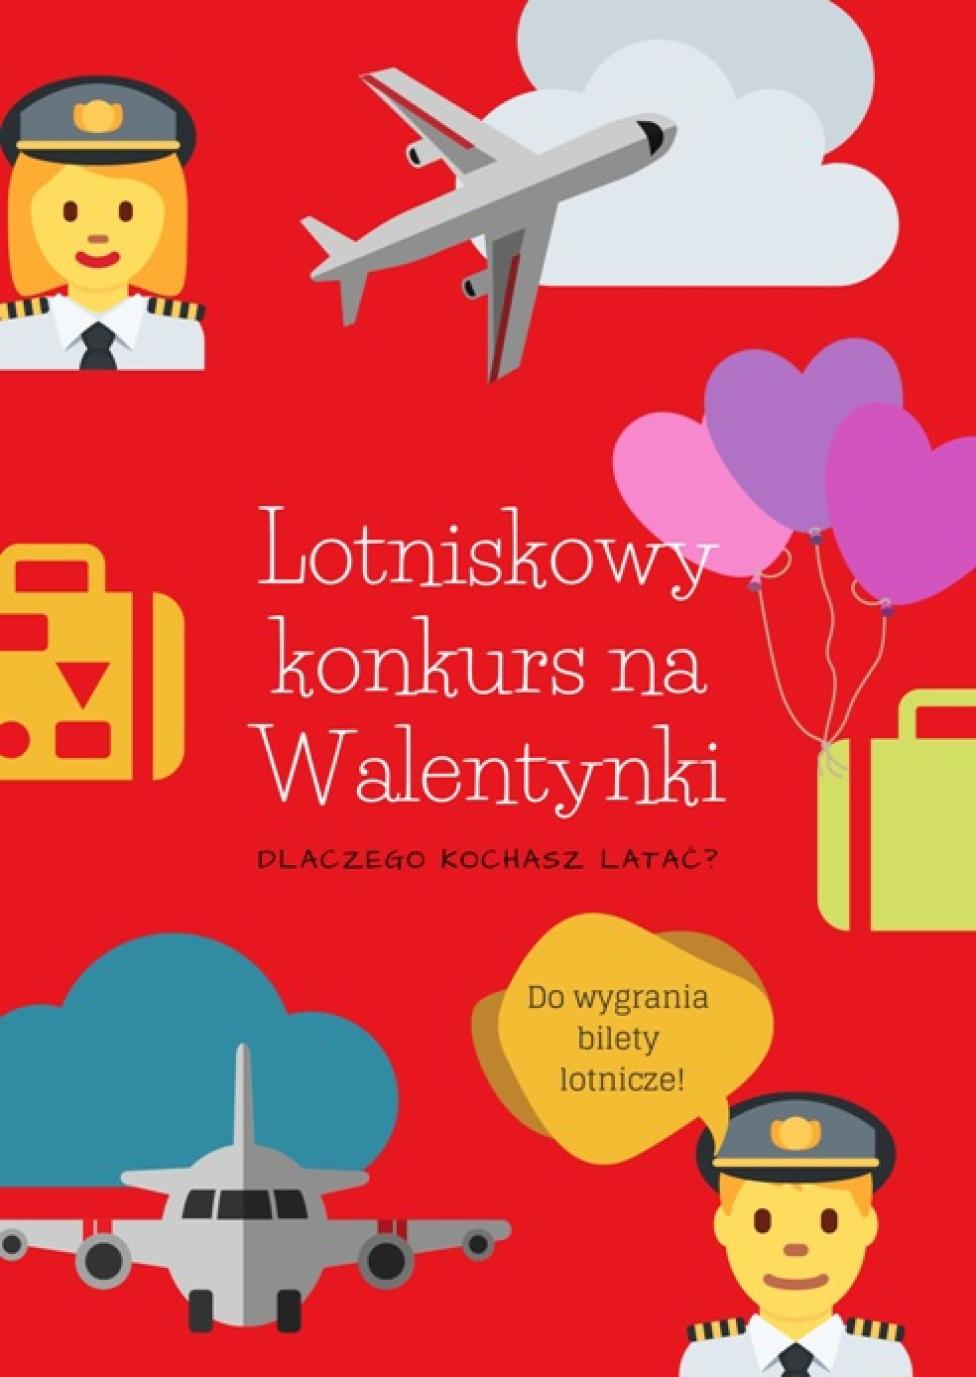 Konkurs Walentynkowy Portu Lotniczego Zielona Góra (fot. airport.lubuskie.pl)